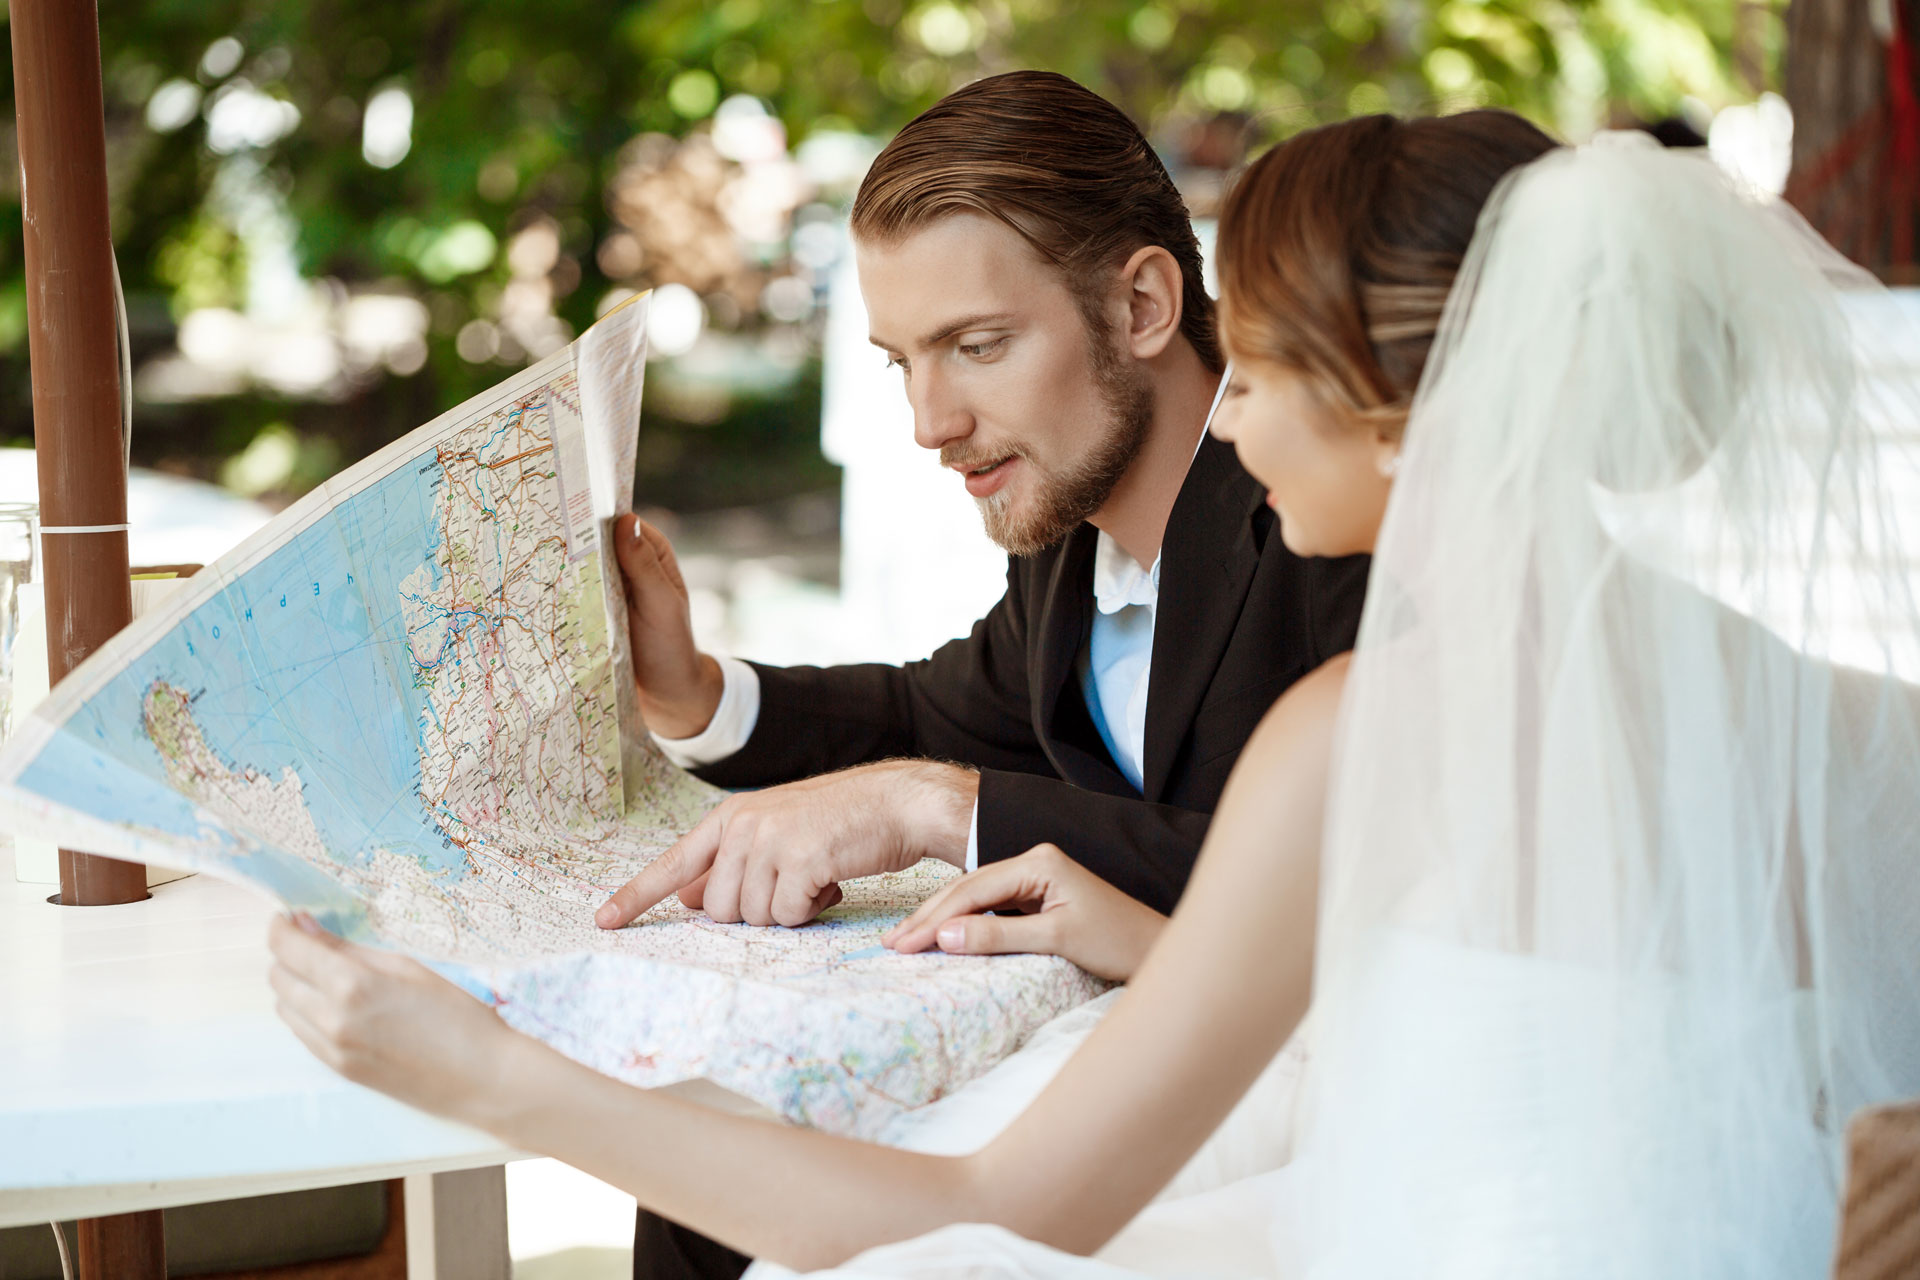 Destination wedding: Le migliori destinazioni per un matrimonio da sogno